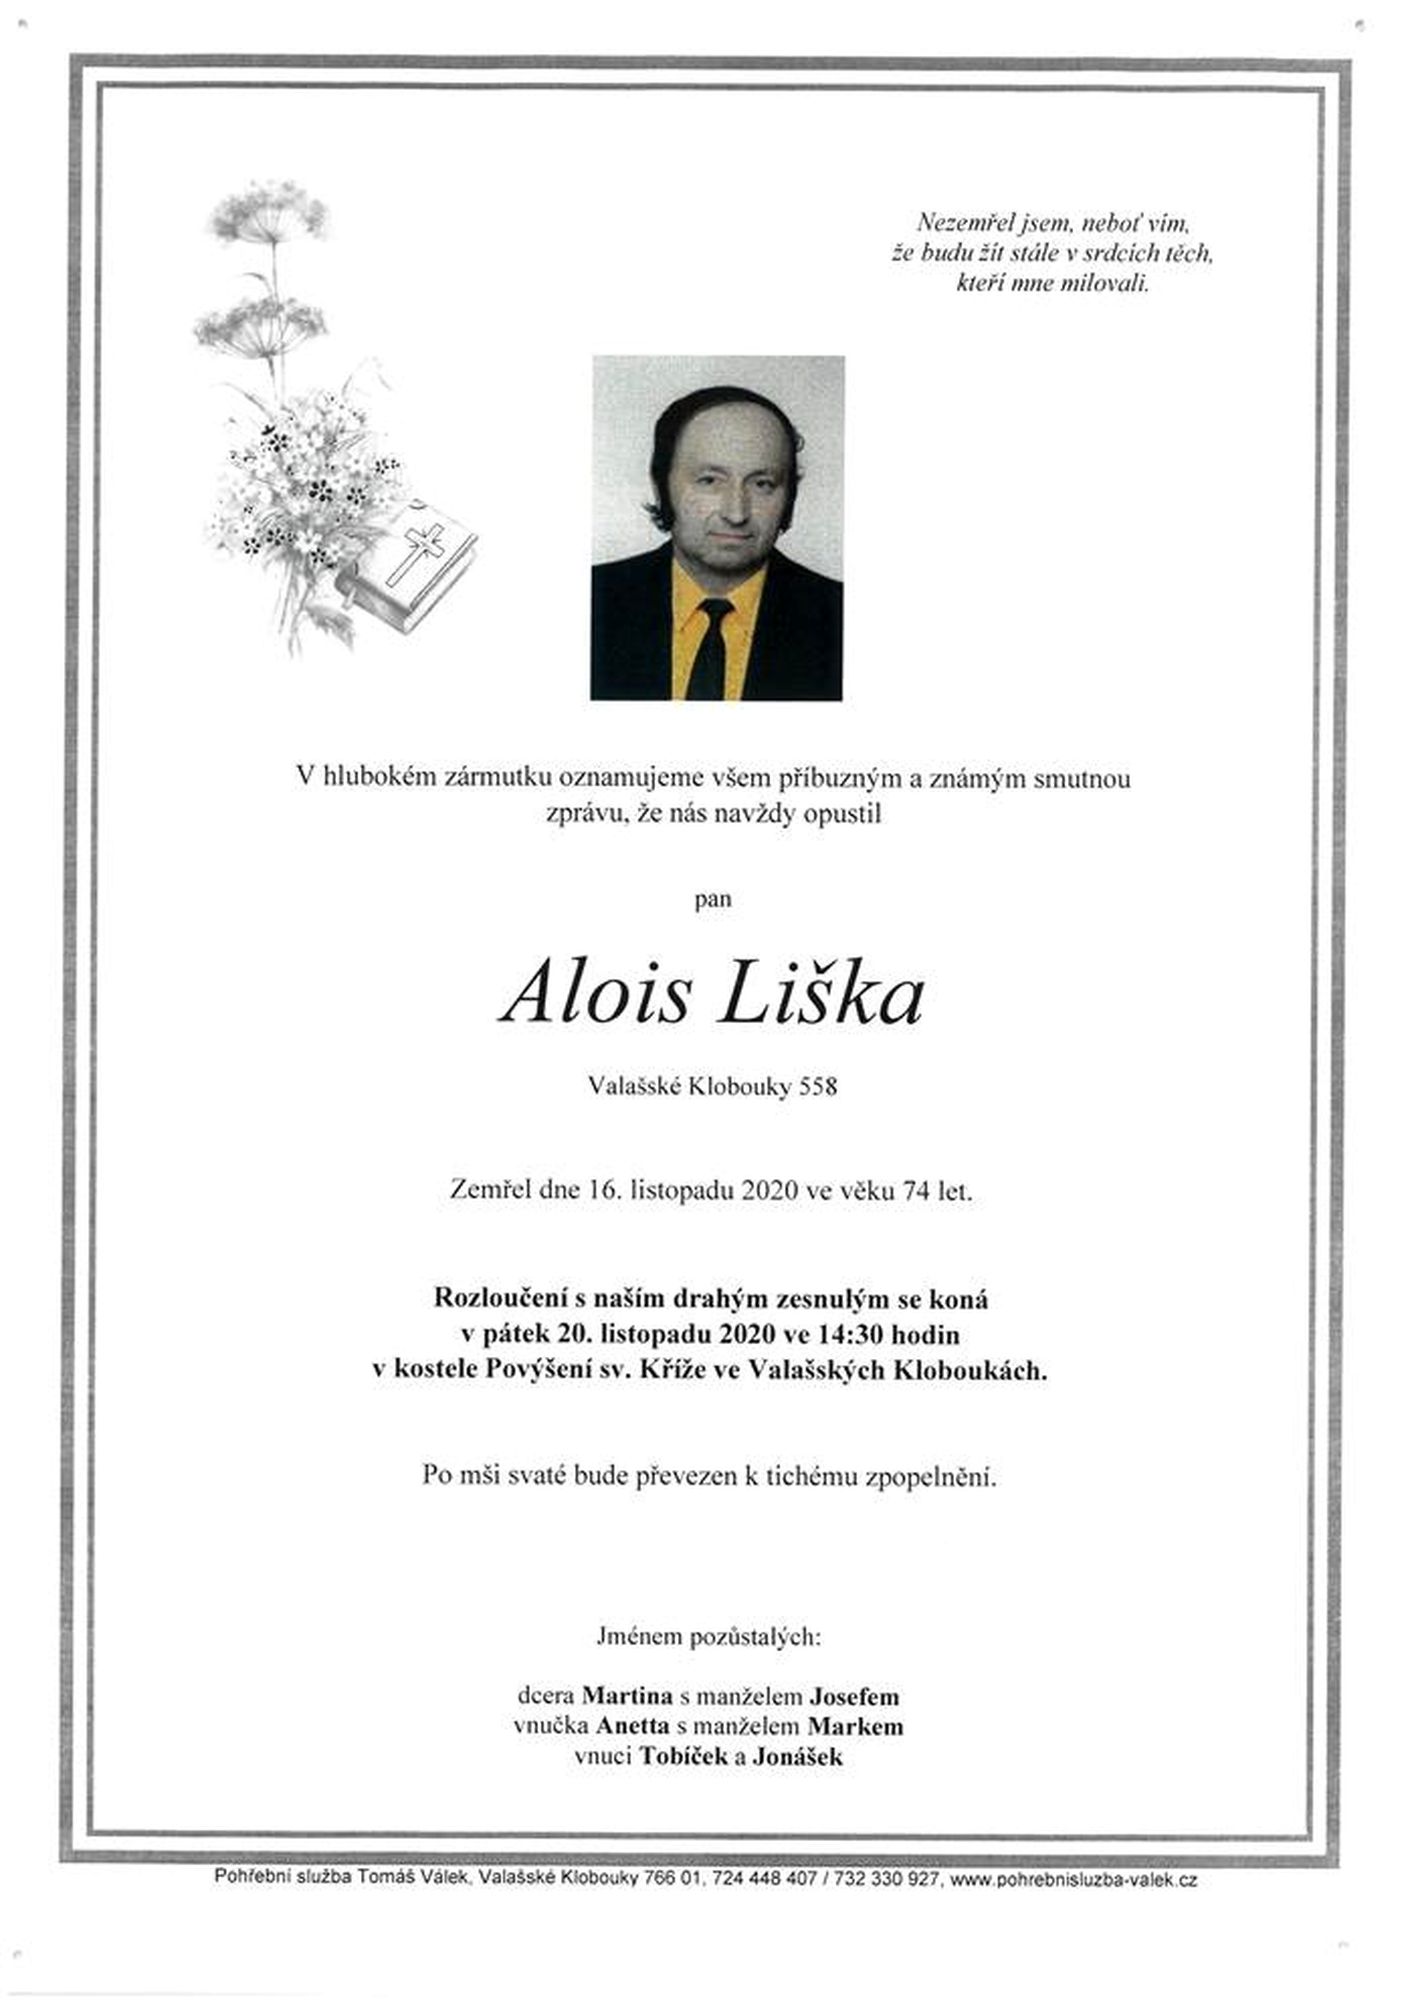 Alois Liška